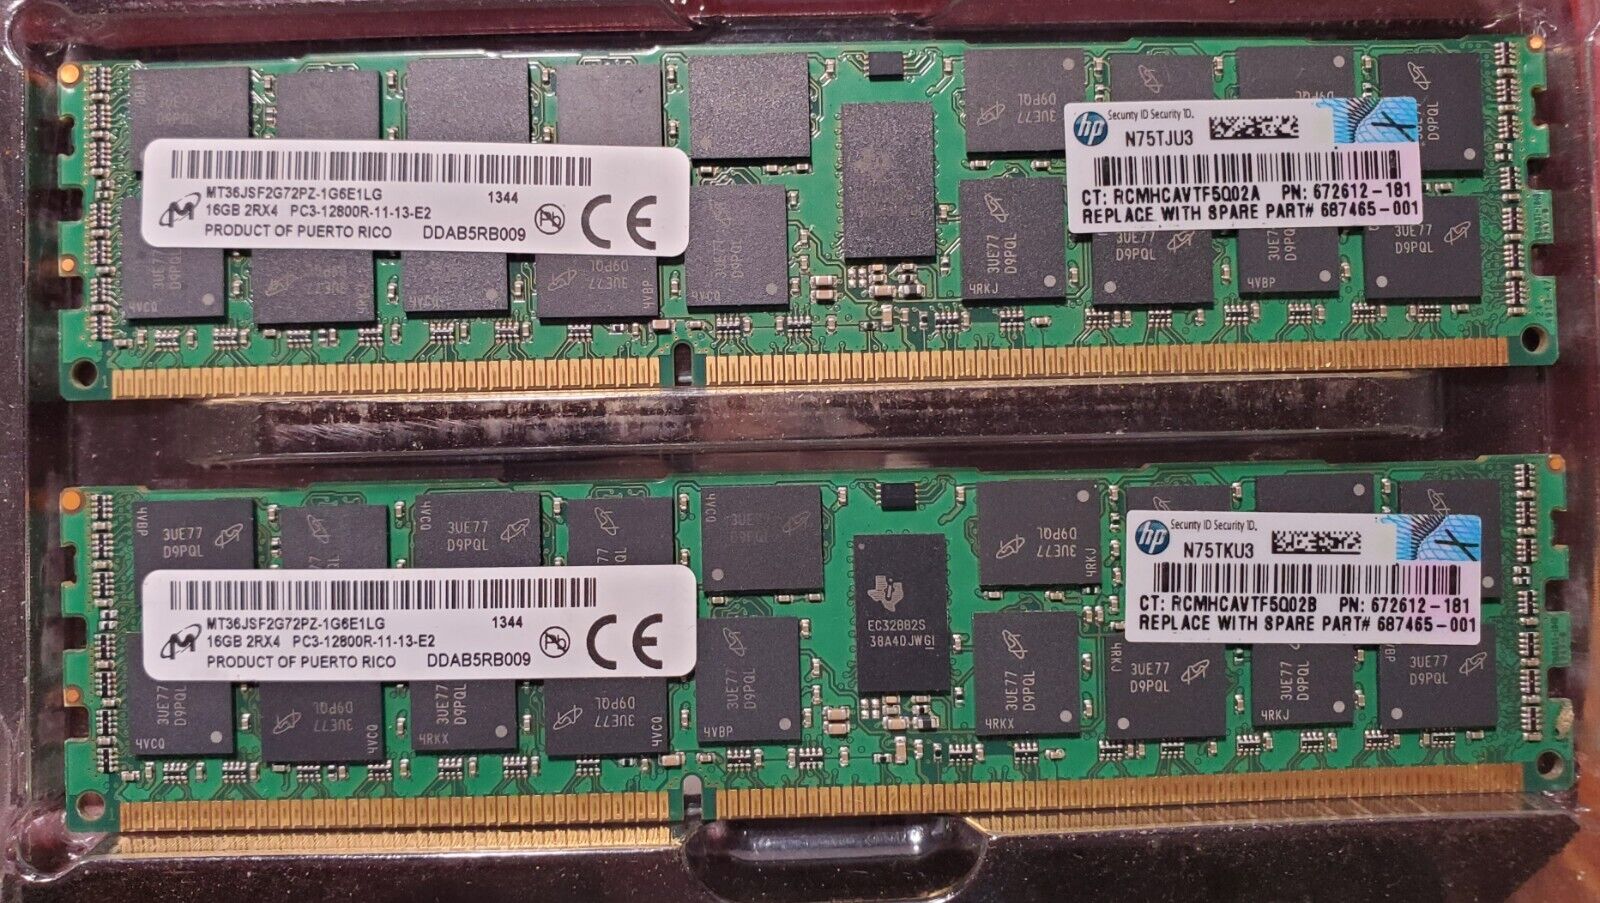 HP Micron 32GB 2Rx4 PC3-12800R MT36JSF2G72PZ-1G6E1LG Server Memory 2X16GB DIMM